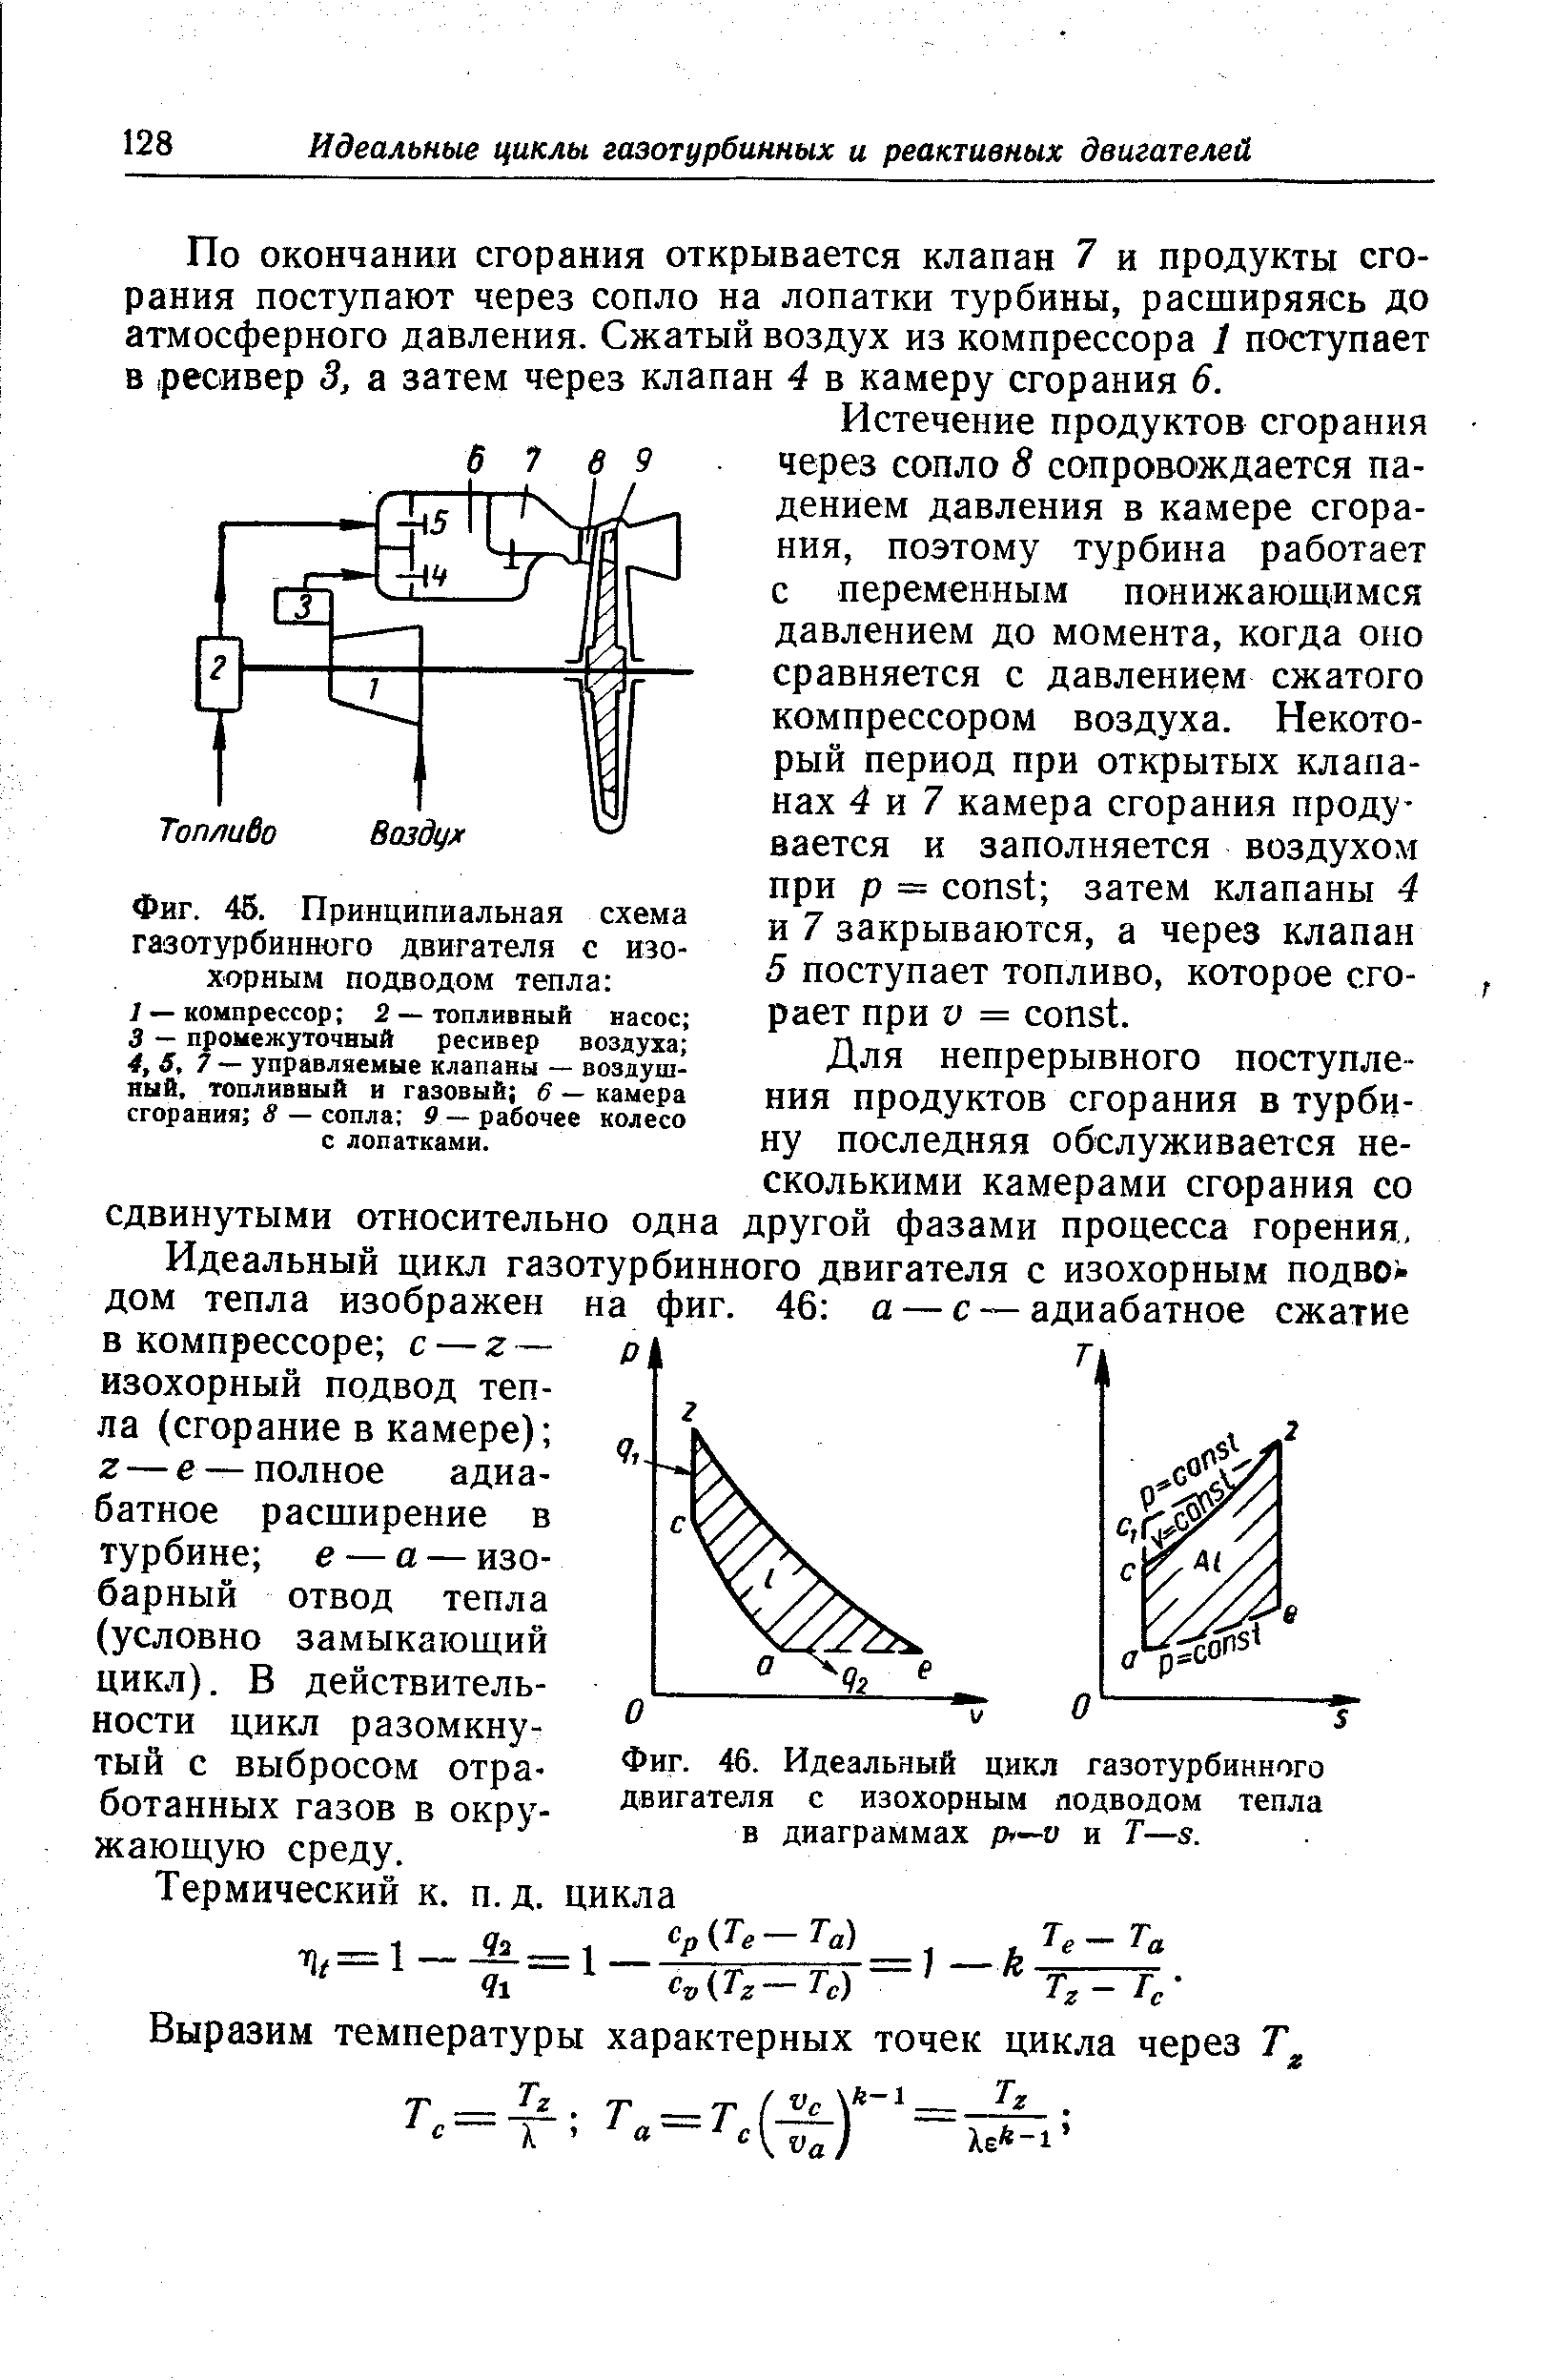 Фиг. 46. Идеальный цикл газотурбинного двигателя с изохорным яодводом тепла в диаграммах p1—v и
